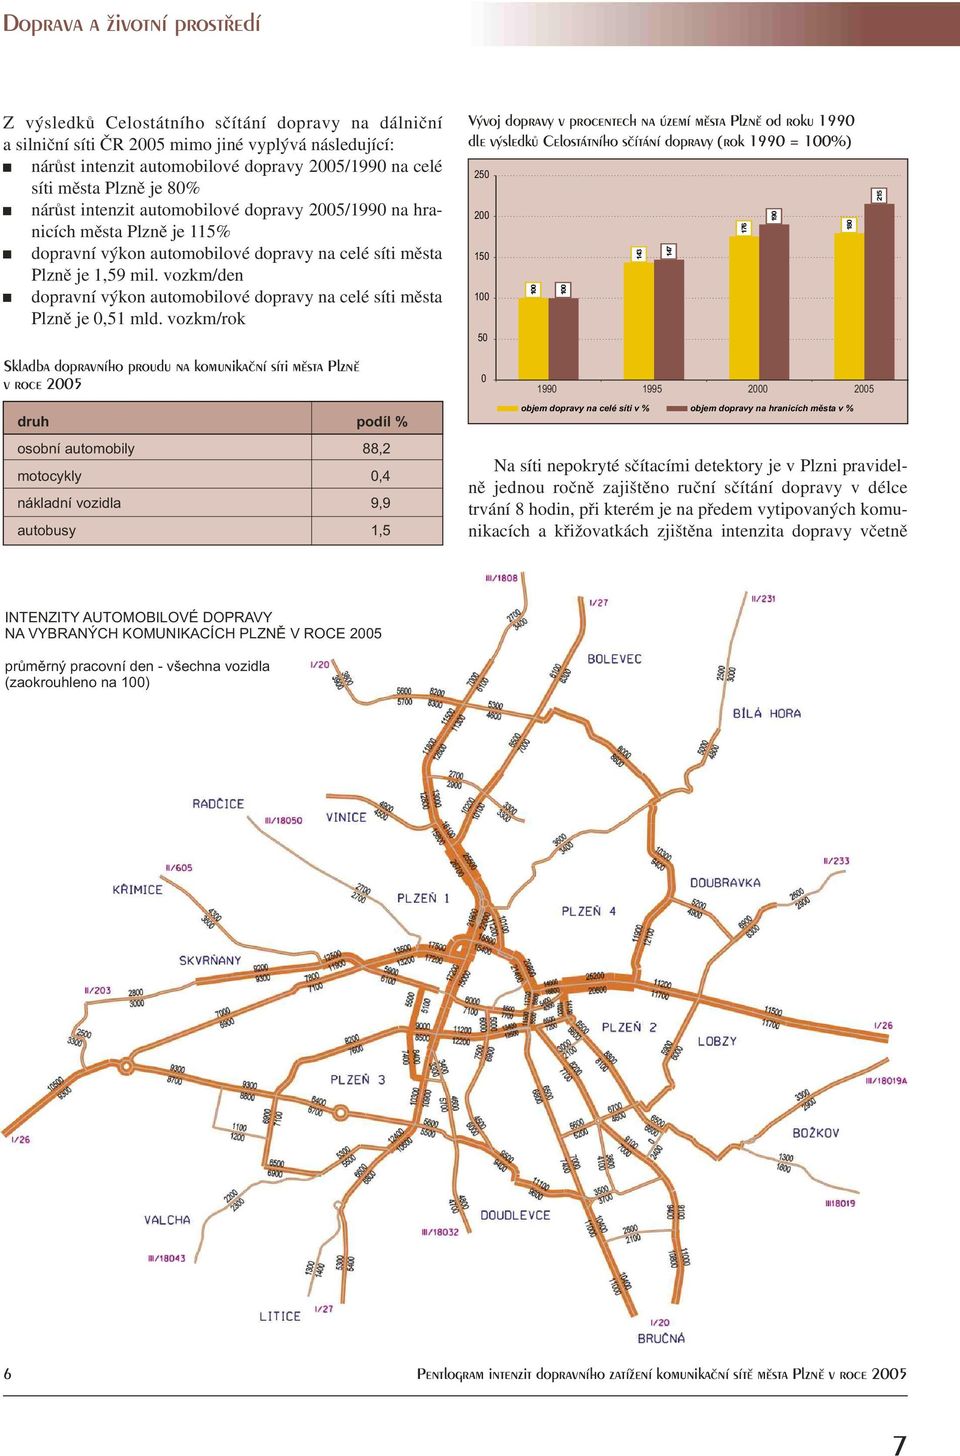 vozkm/den dopravní výkon automobilové dopravy na celé síti mìsta Plznì je 0,51 mld.